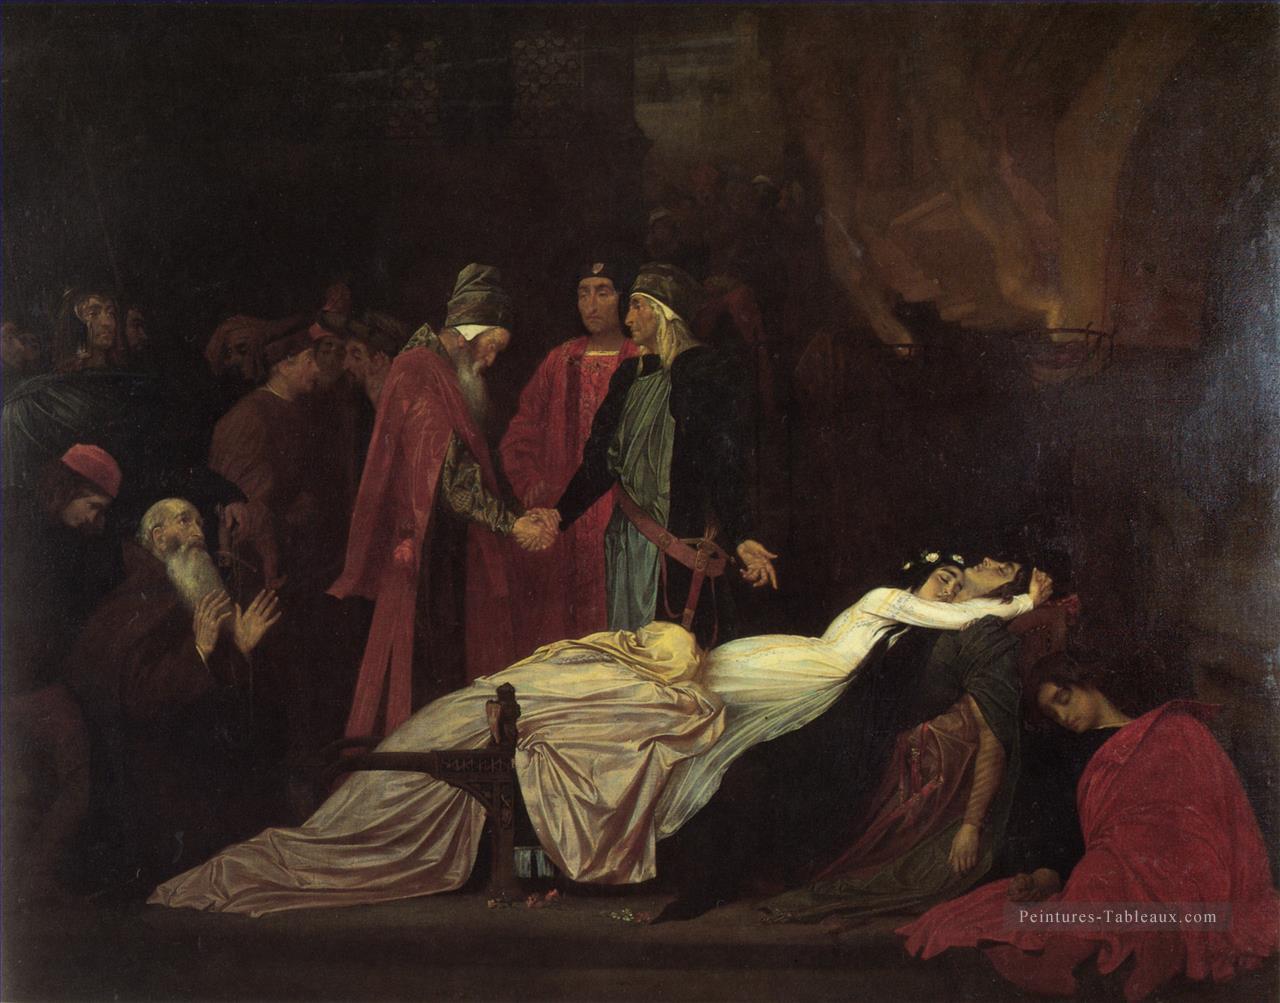 La réconciliation des Montagues et des Capulets académisme Frederic Leighton Peintures à l'huile